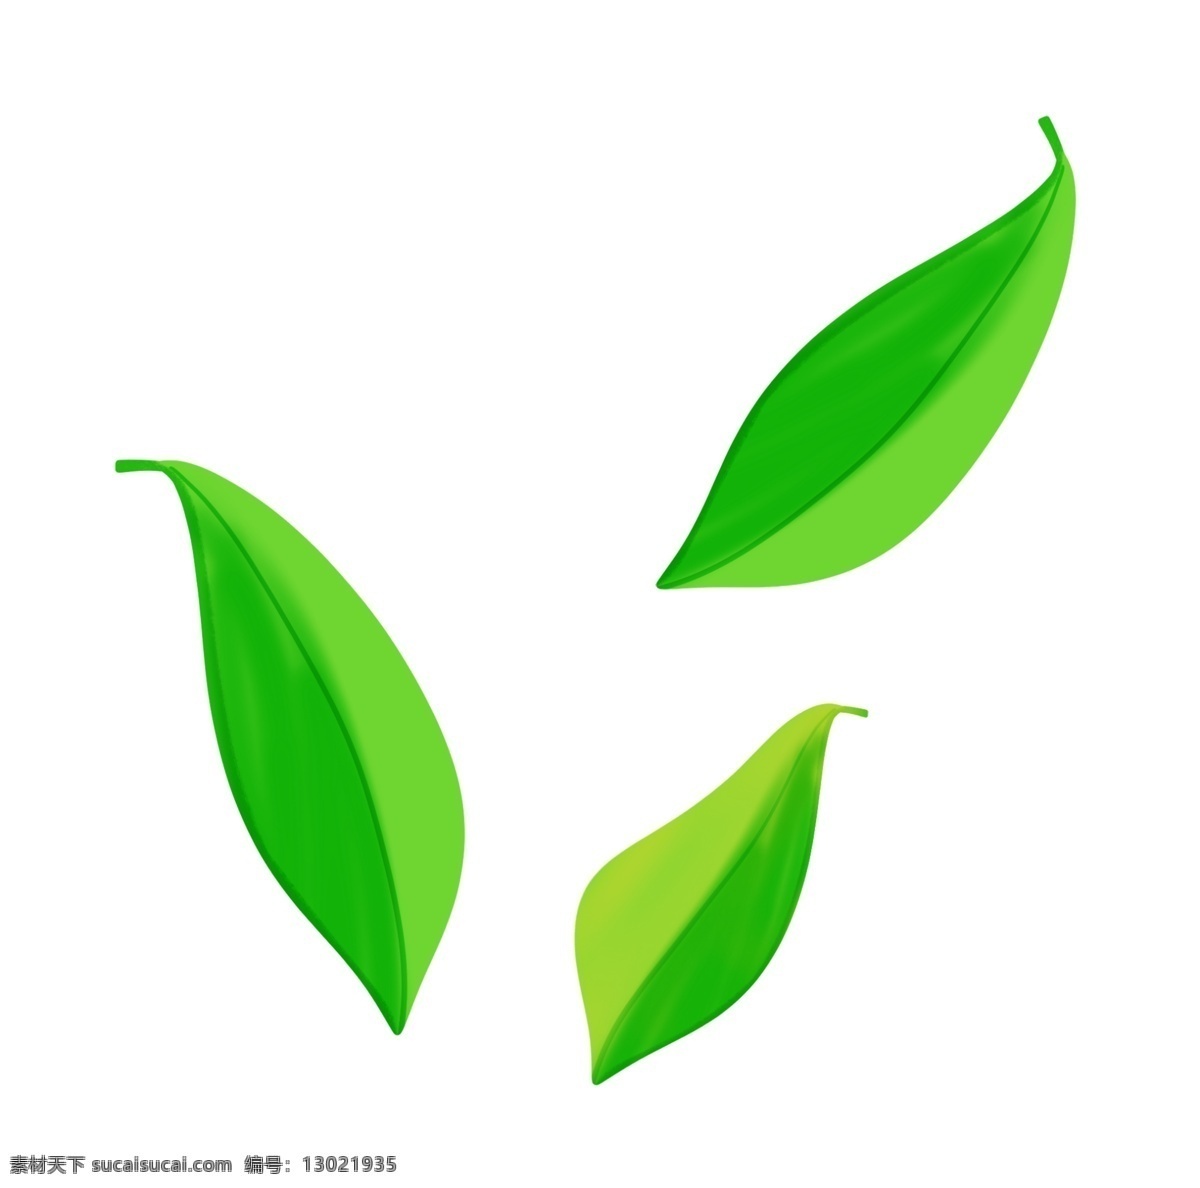 飘扬 绿色 树叶 插画 飘扬的树叶 卡通植物插画 植物 精美的绿叶 叶子 创意植物插画 绿叶